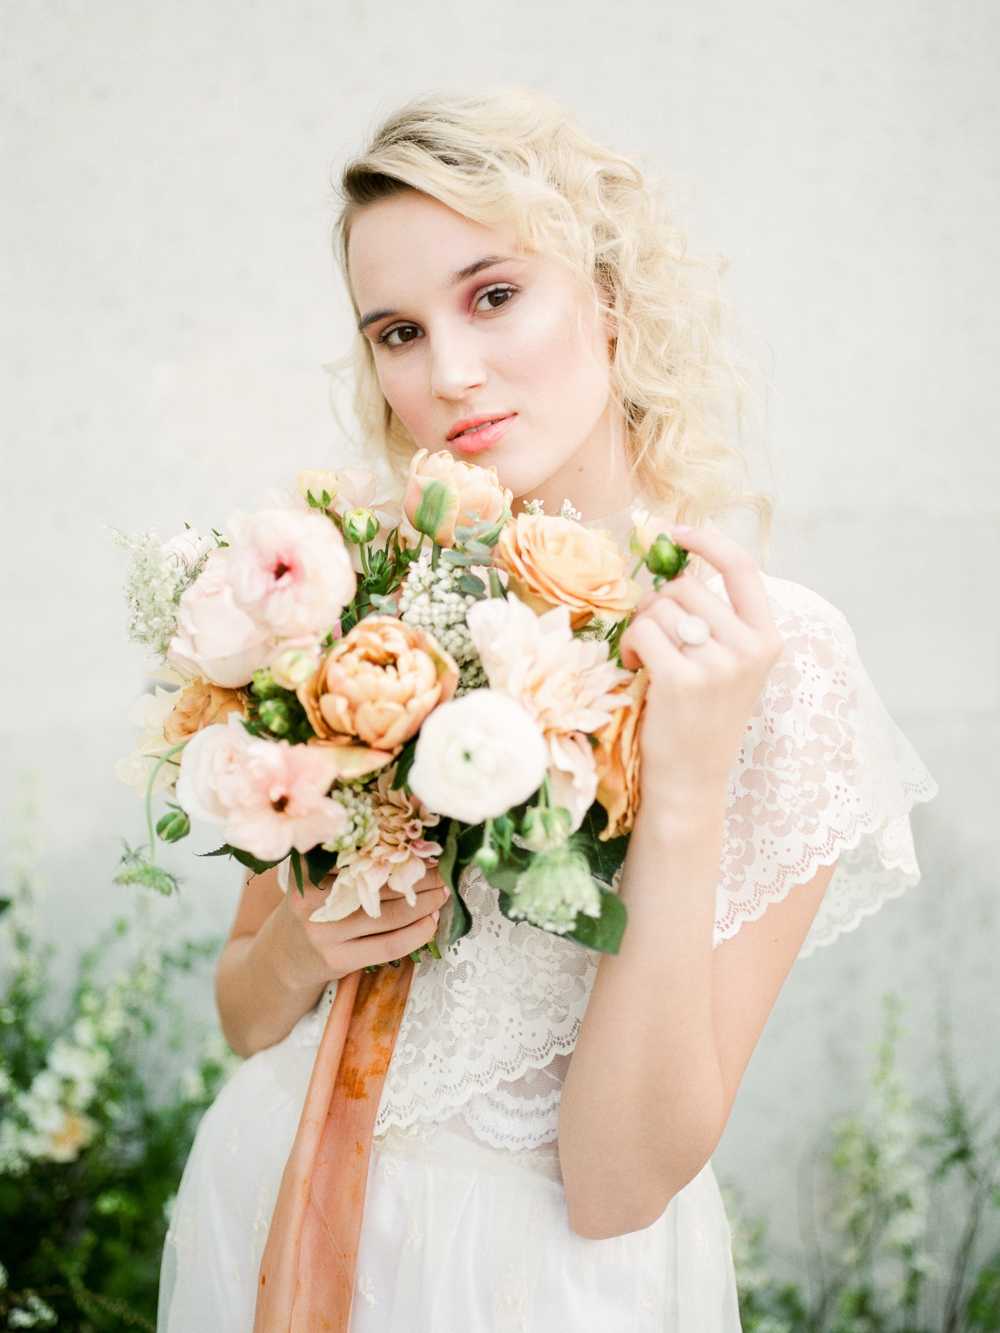 Christine Gosch - elopement photographer - Houston intimate wedding photographer - film wedding photographer